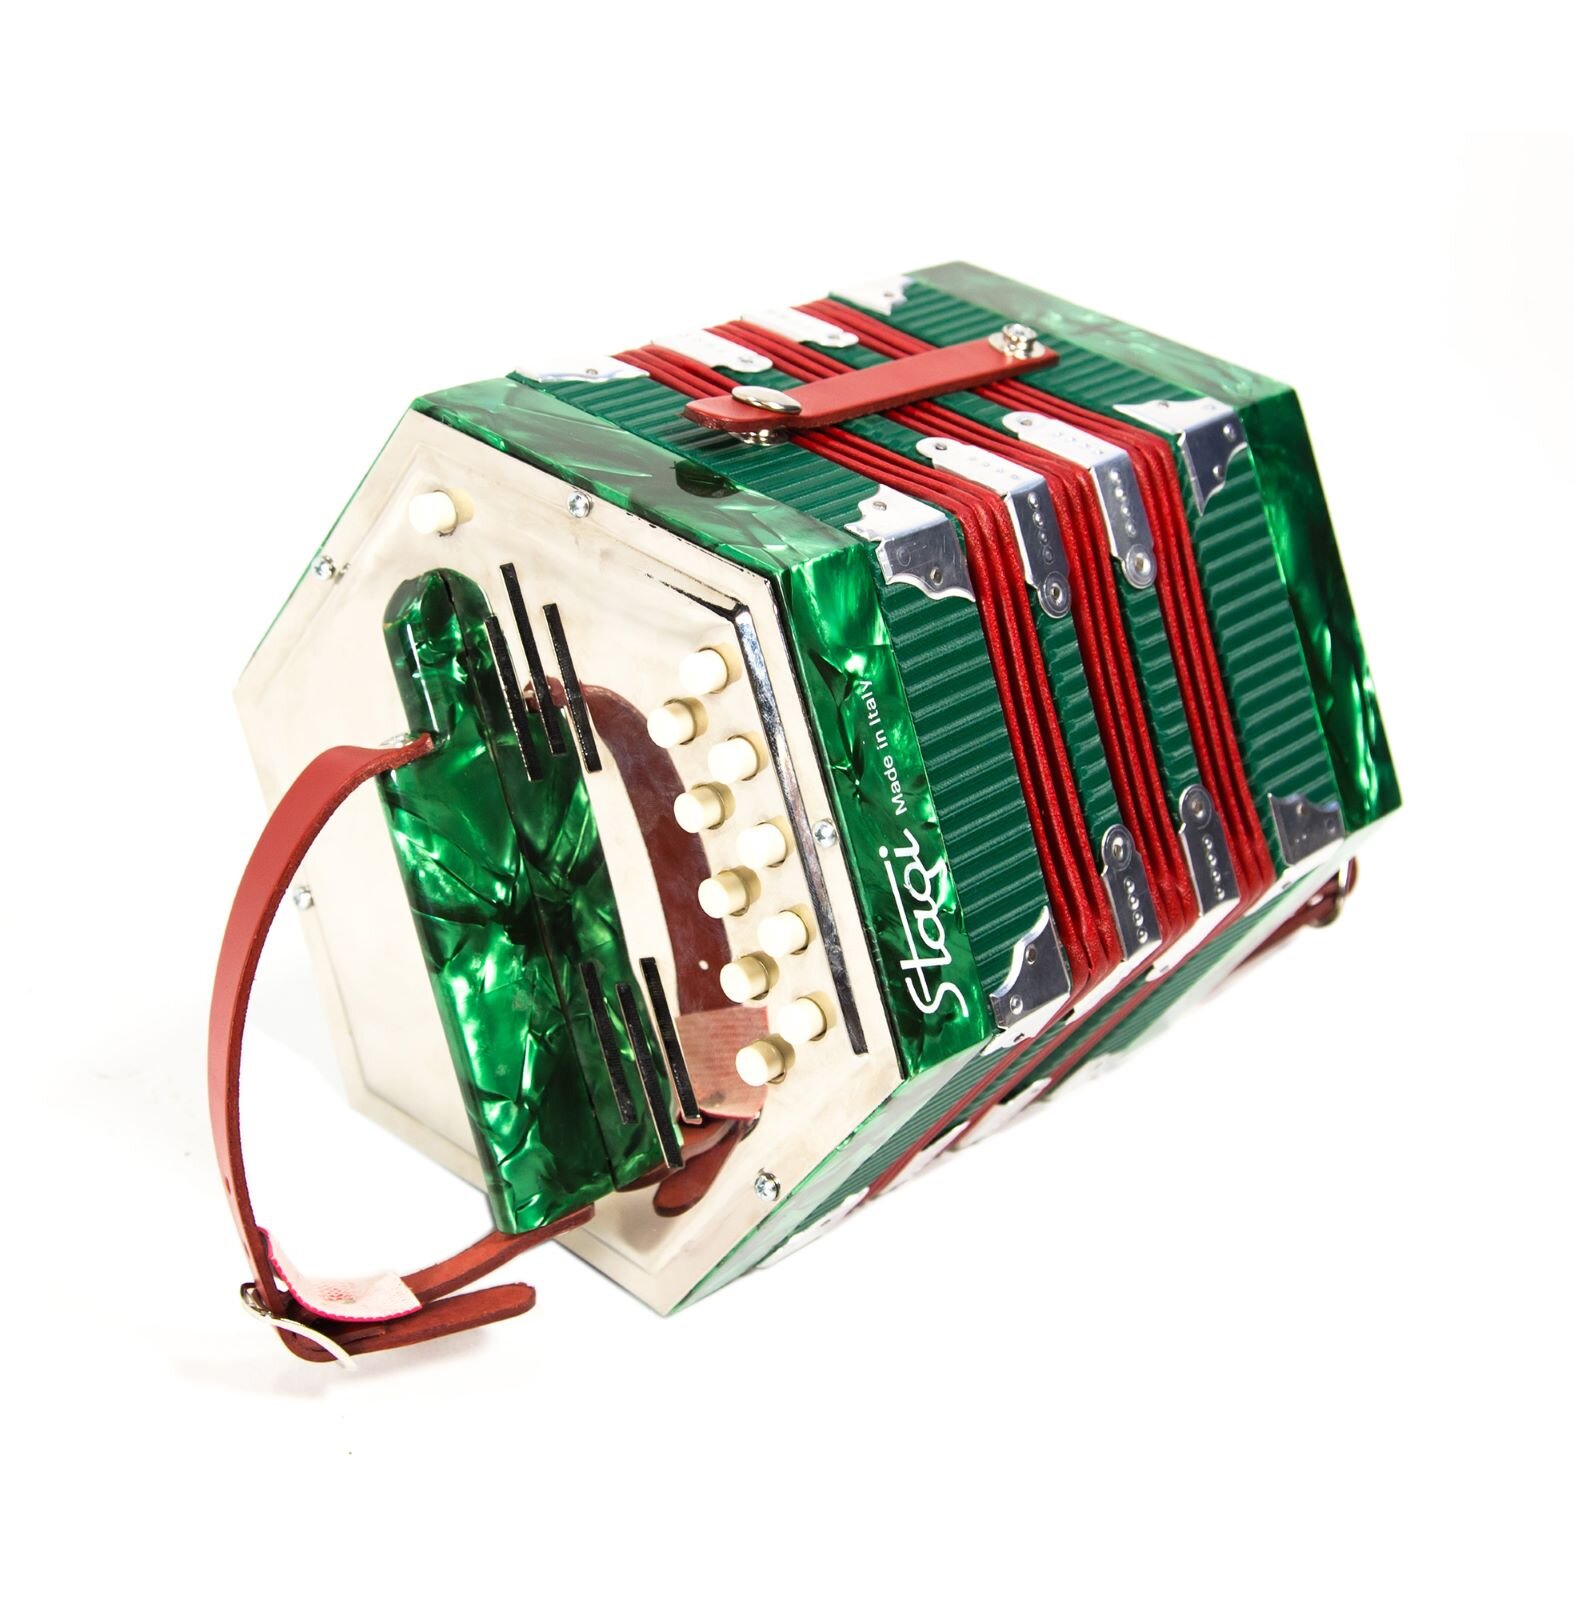 Stagi U-4-2 The brightest 20-button diatonic concertina : photo 1